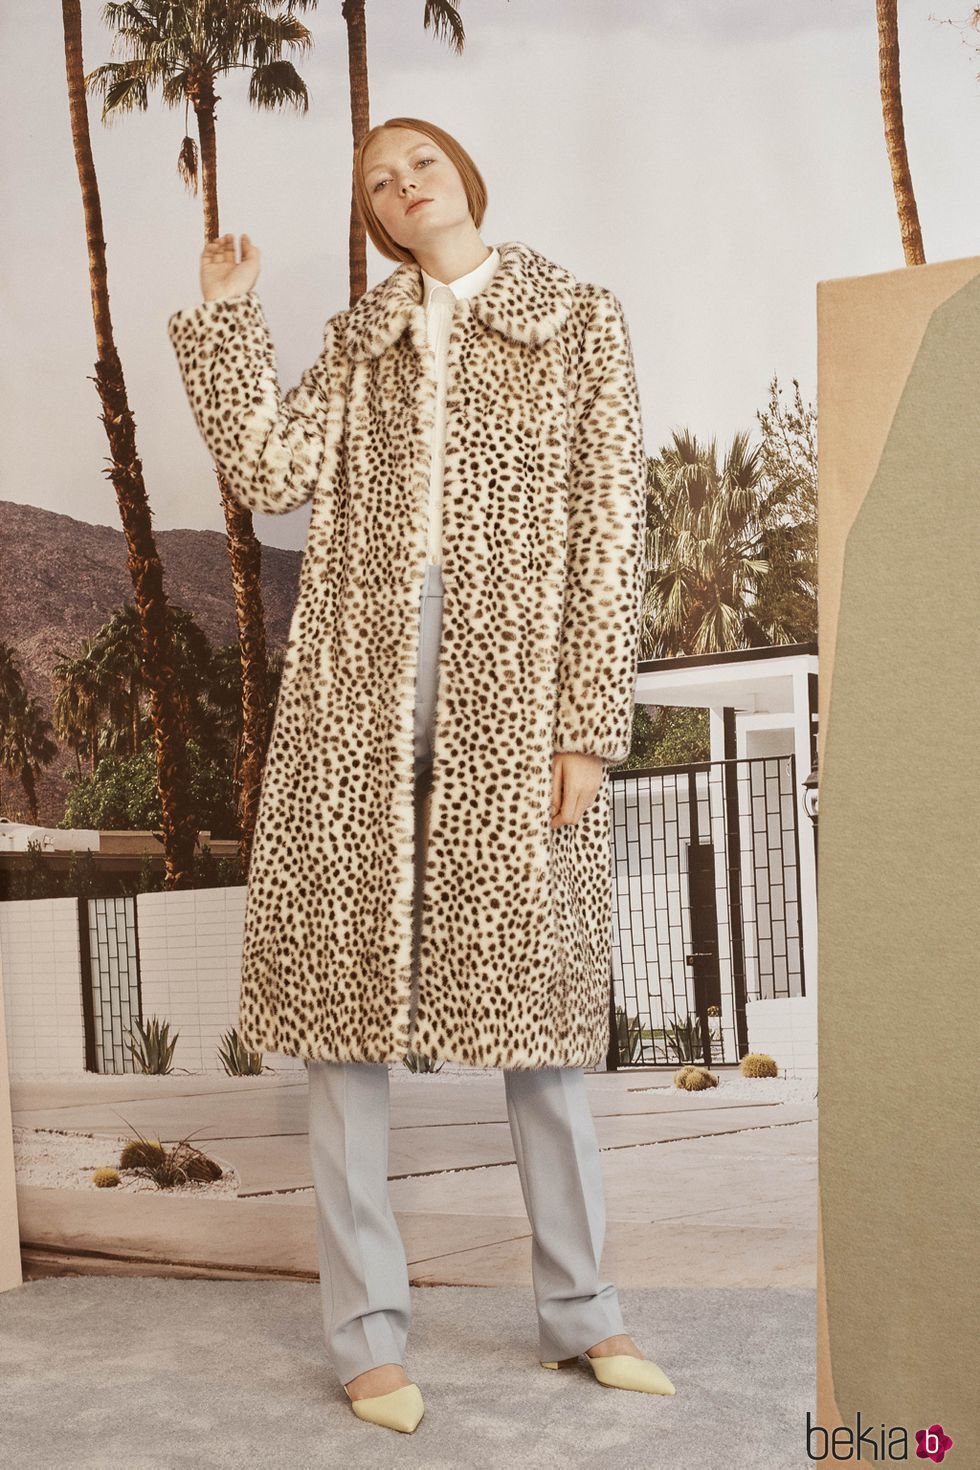 Abrigo de print de leopardo de la colección Crucero 2019 de Carolina Herrera